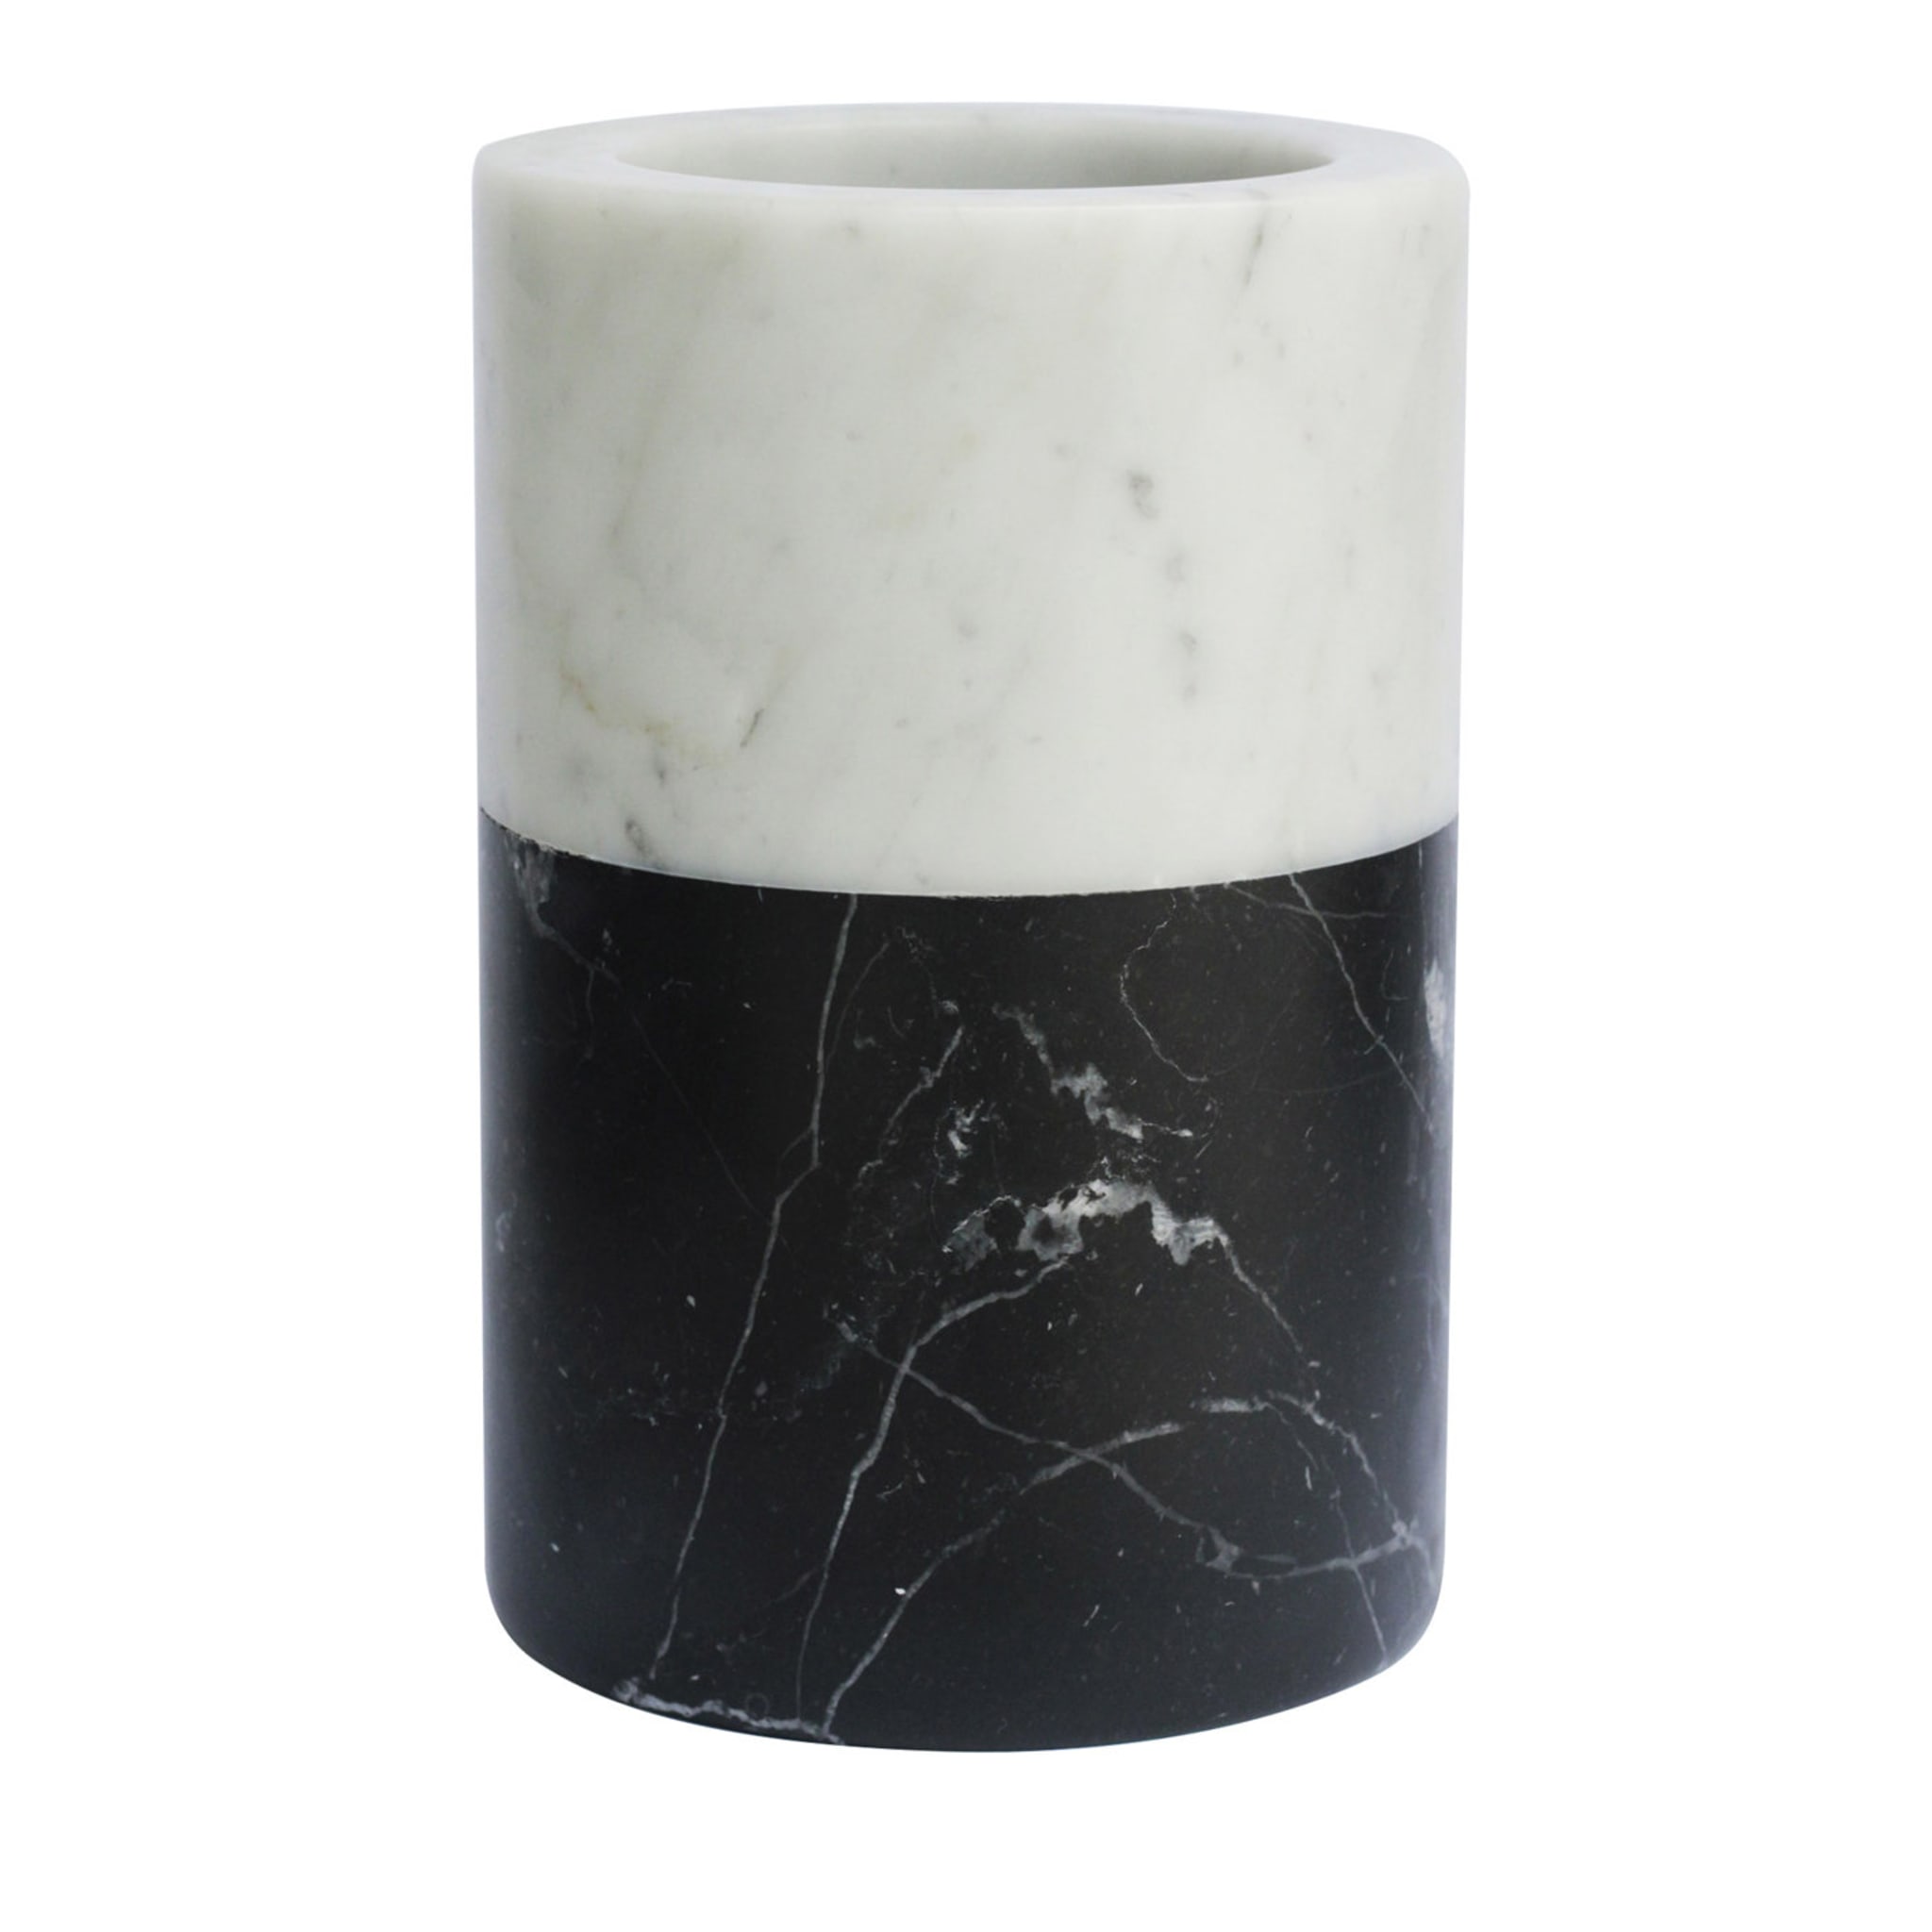 Jarrón de mármol bicolor blanco de Carrara y negro de Marquina - Vista principal